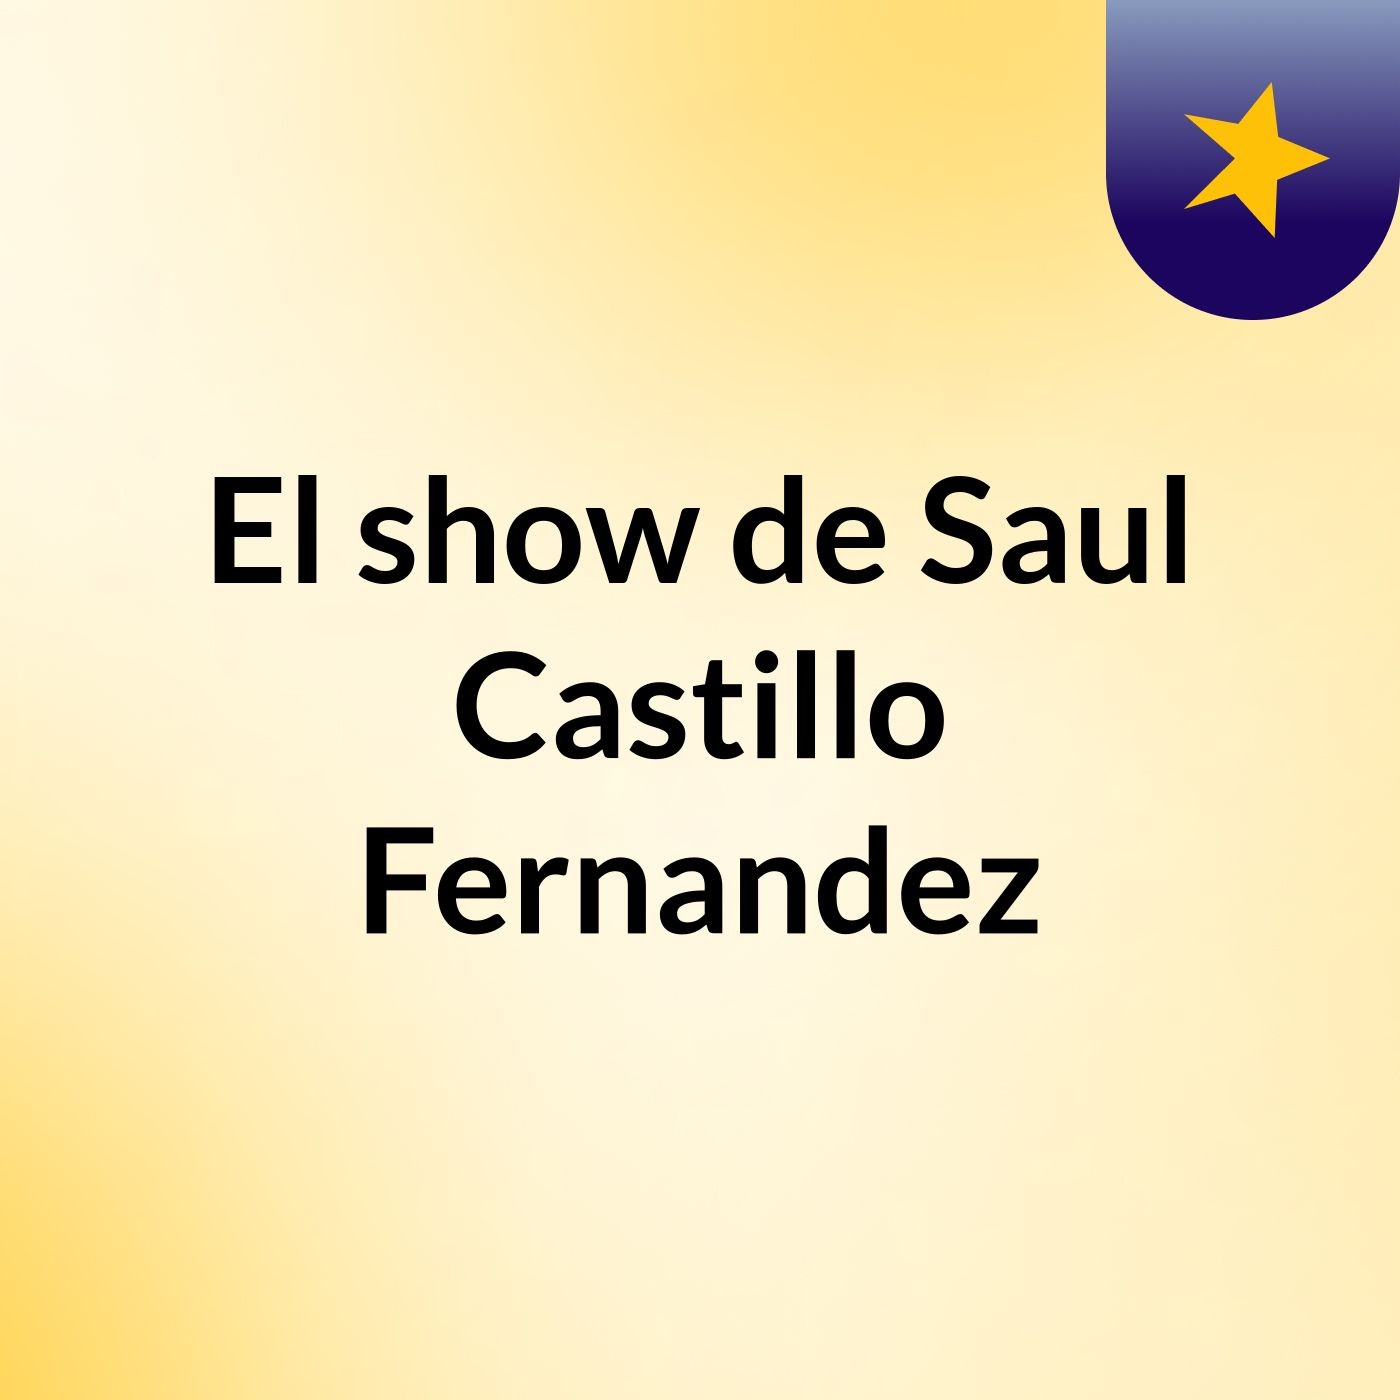 El show de Saul Castillo Fernandez